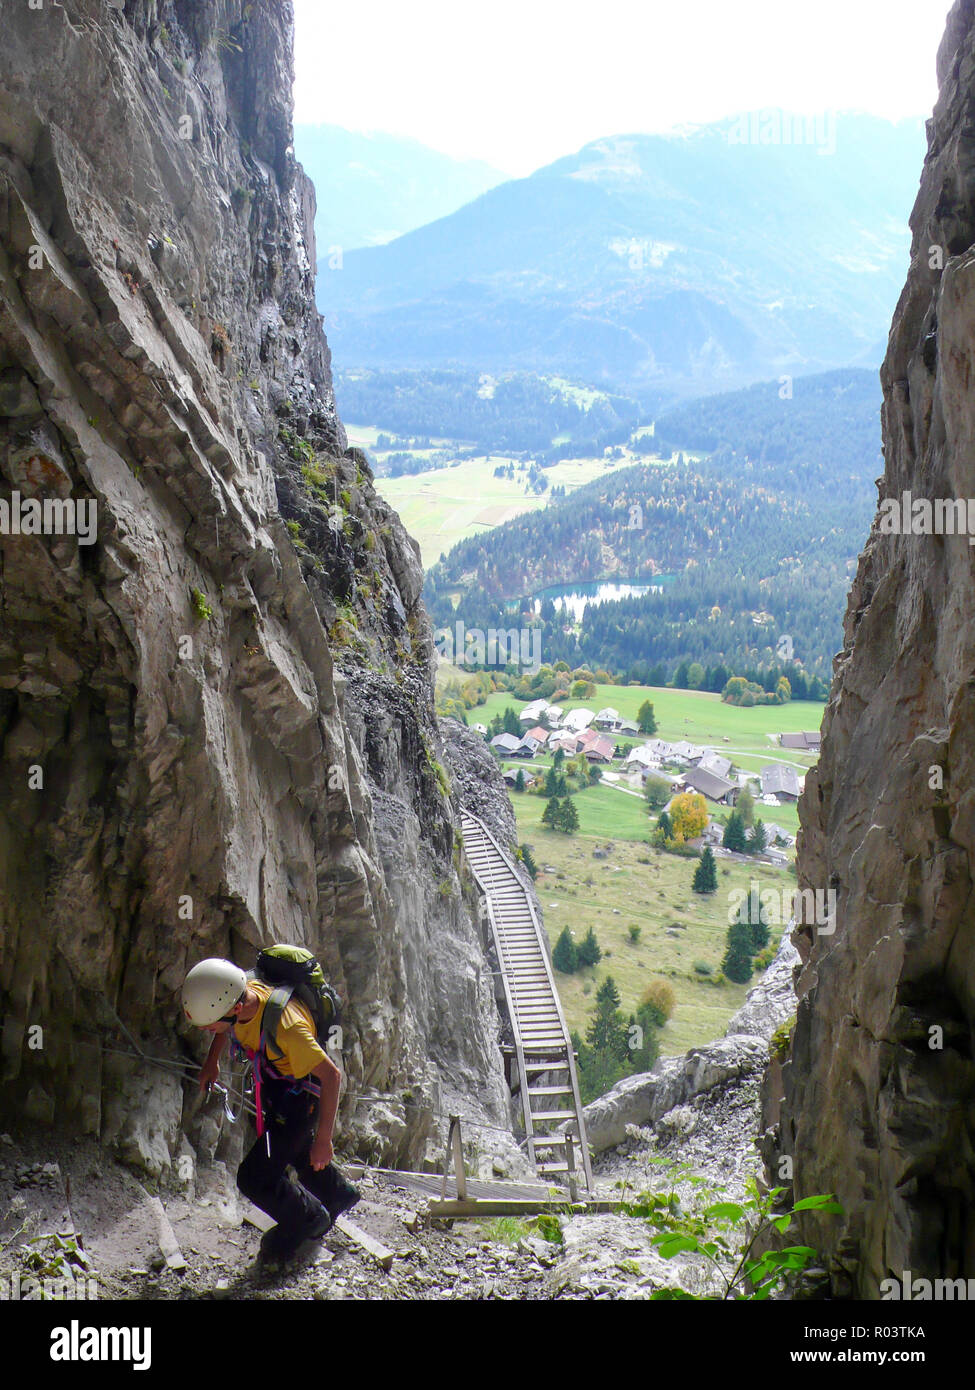 Mountain Rock climber grimpant à travers une gorge rocheuse abrupte sur son chemin à un haut sommet alpin avec une très belle vue derrière lui des Alpes Suisses Banque D'Images